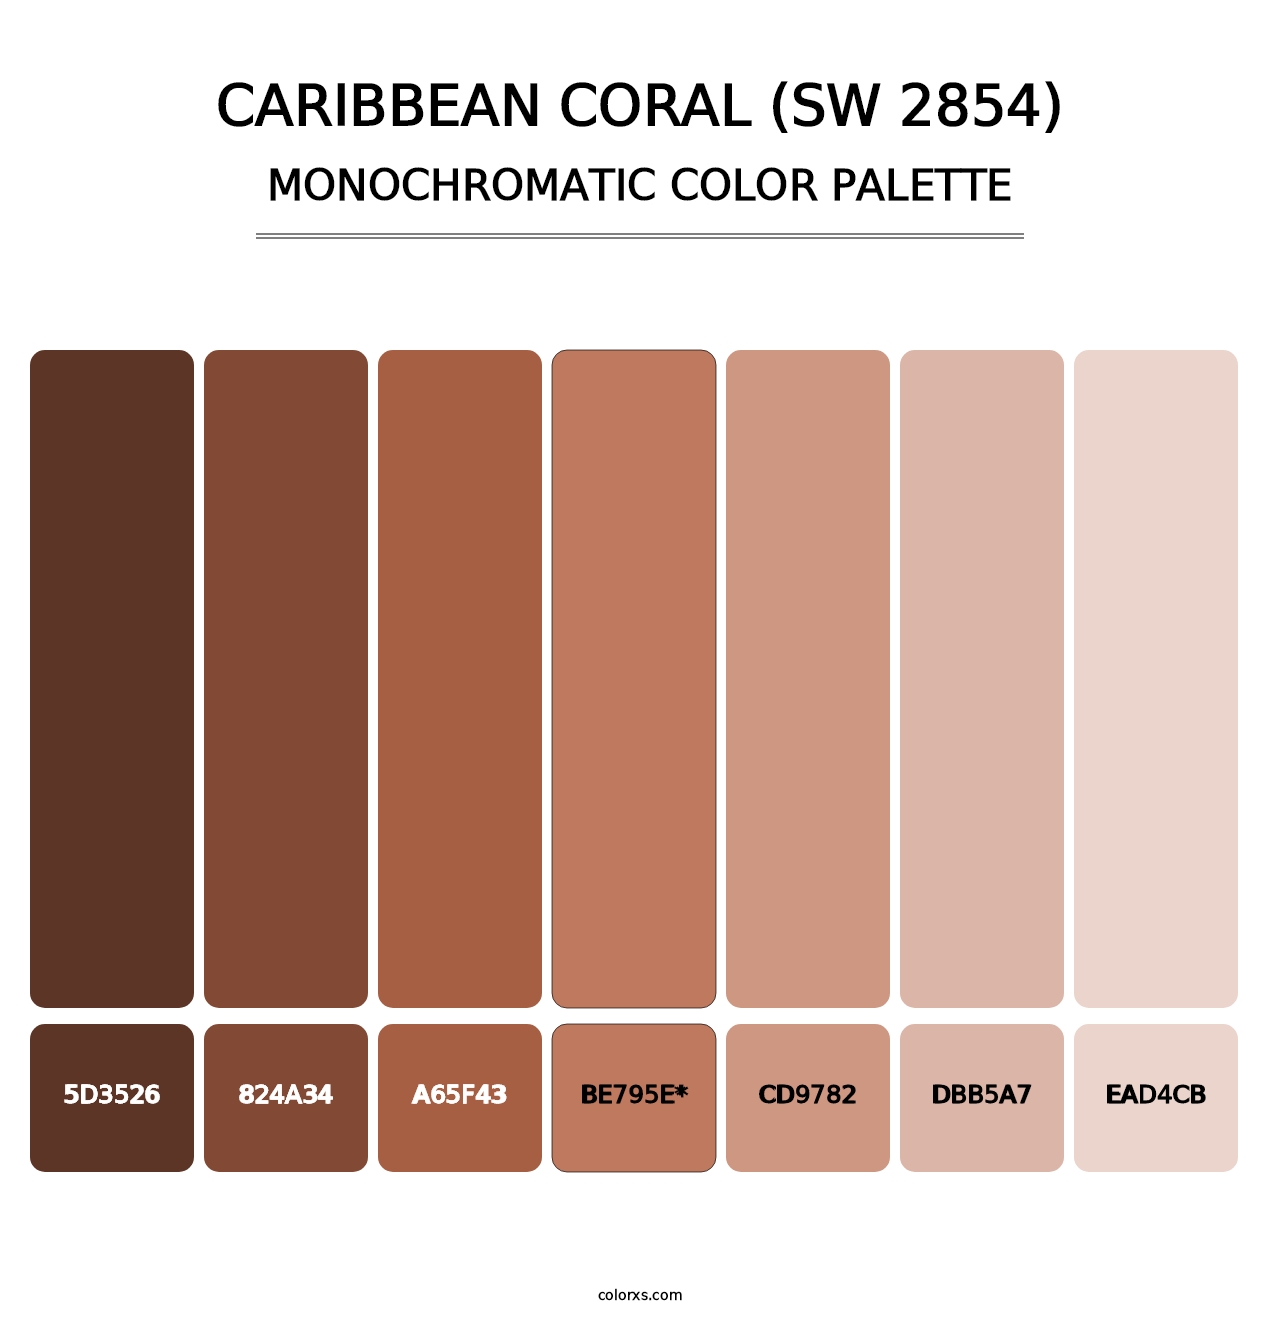 Caribbean Coral (SW 2854) - Monochromatic Color Palette